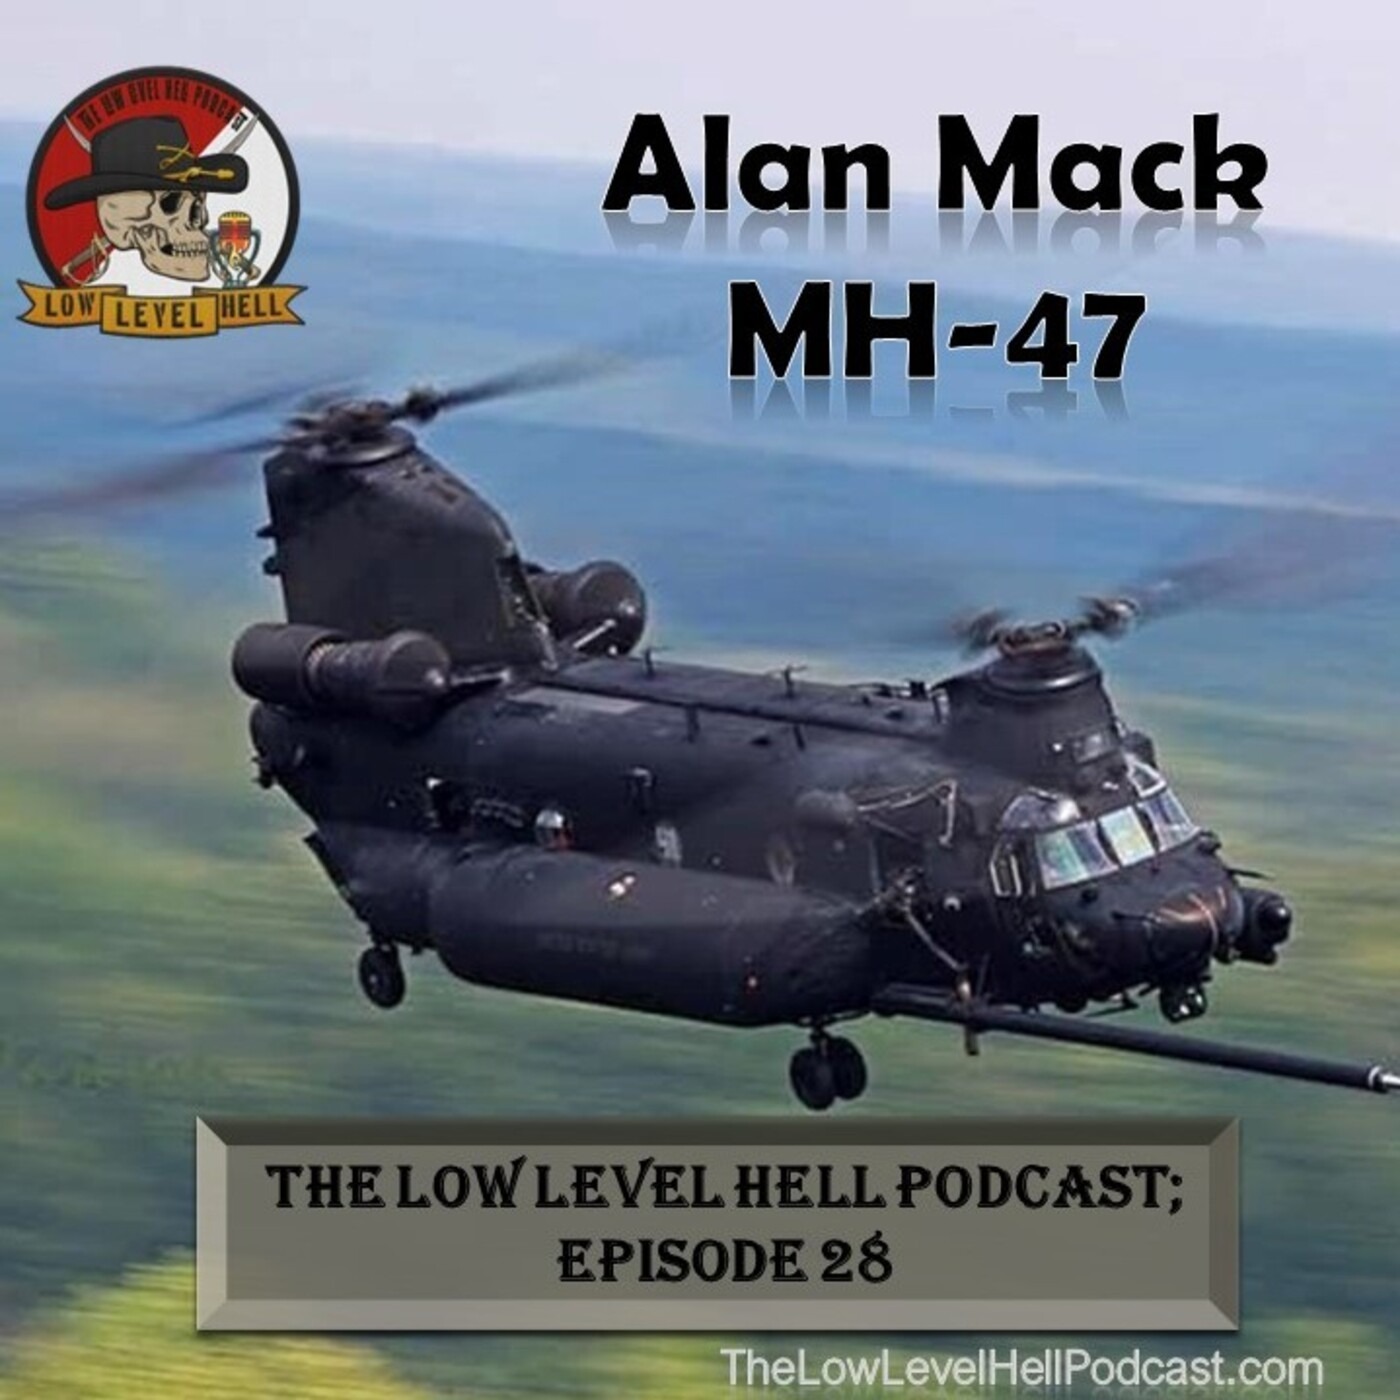 Episode 28: Alan Mack, US Army